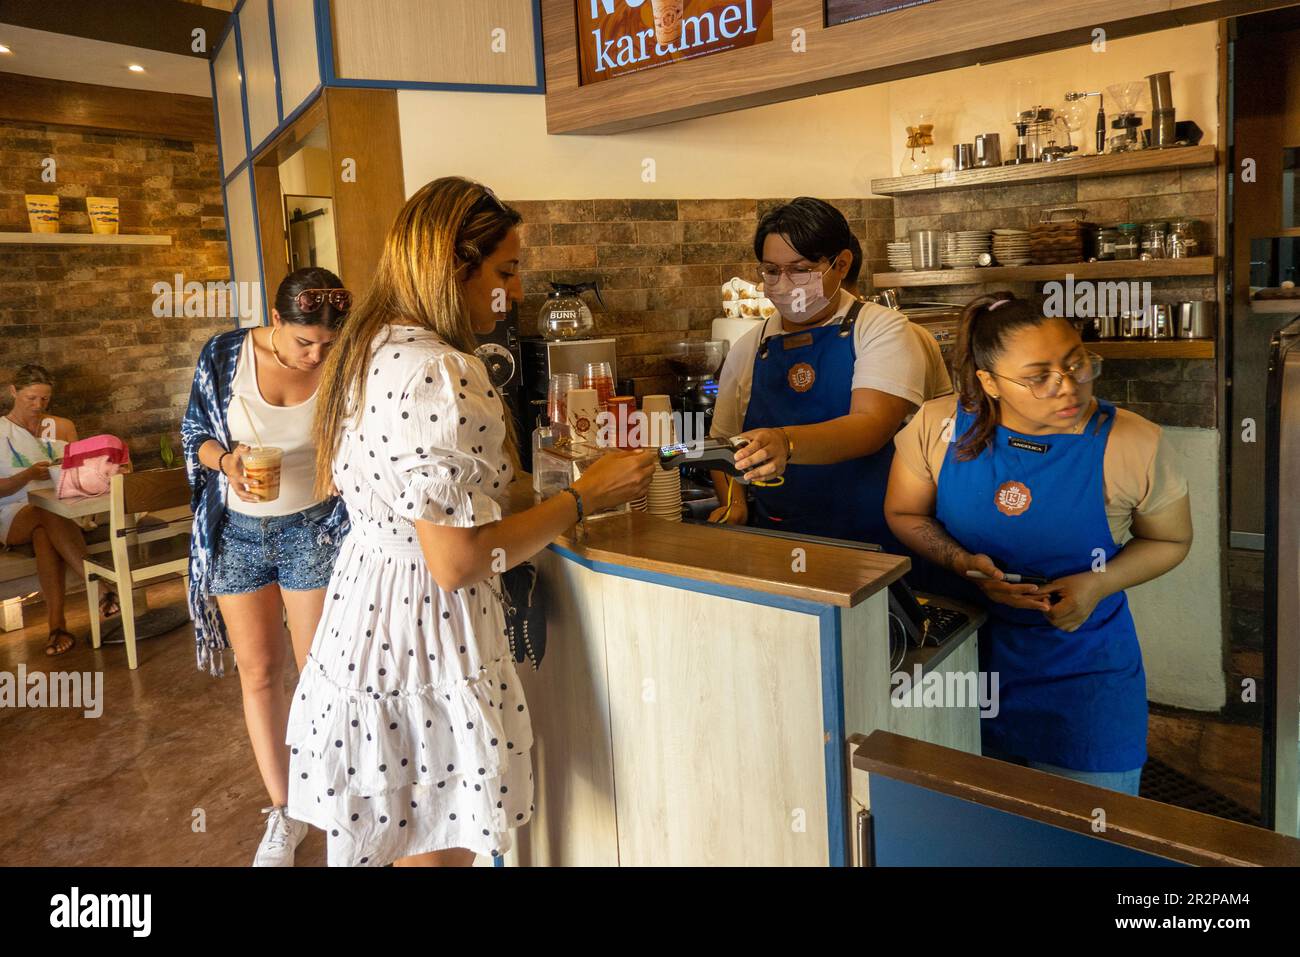 Conkafecito coffee shop in Valladolid Yucatan Mexico Stock Photo